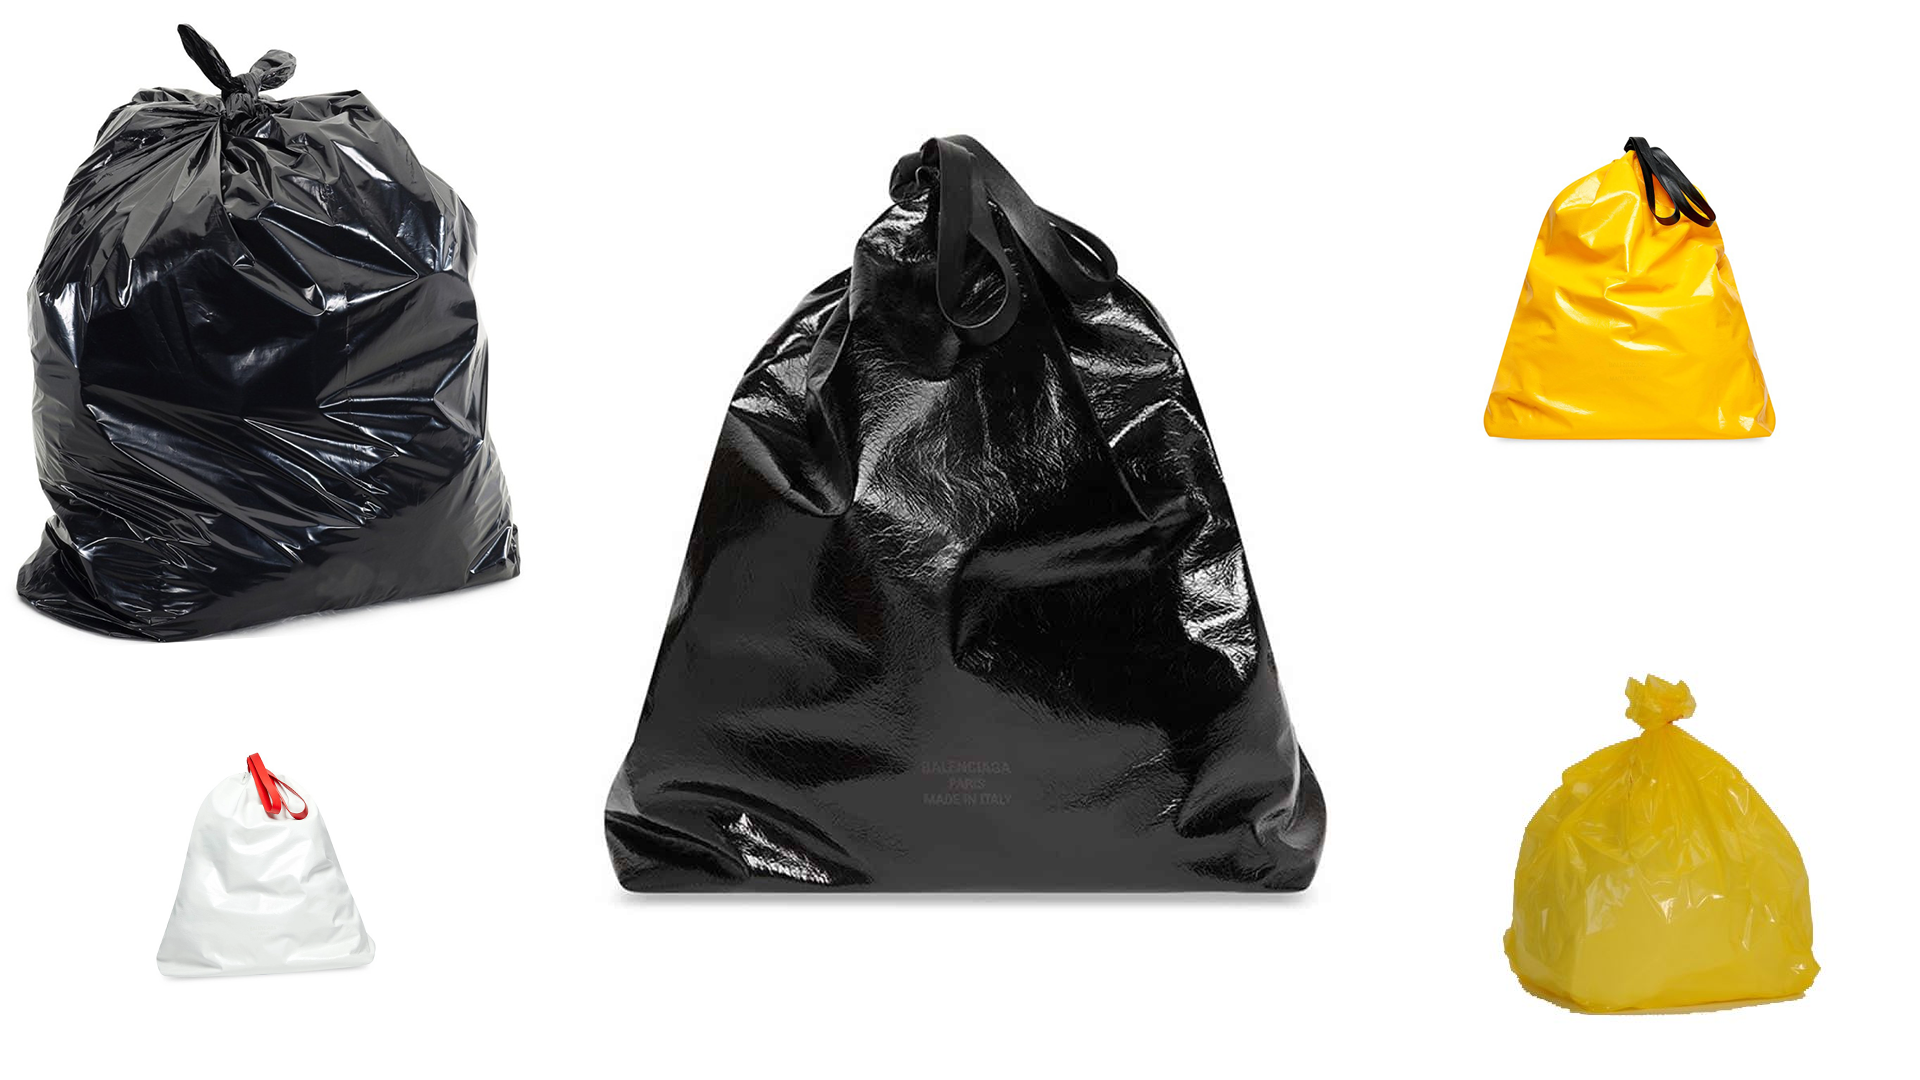 High trashion! Balenciaga's £1,500 bin bag